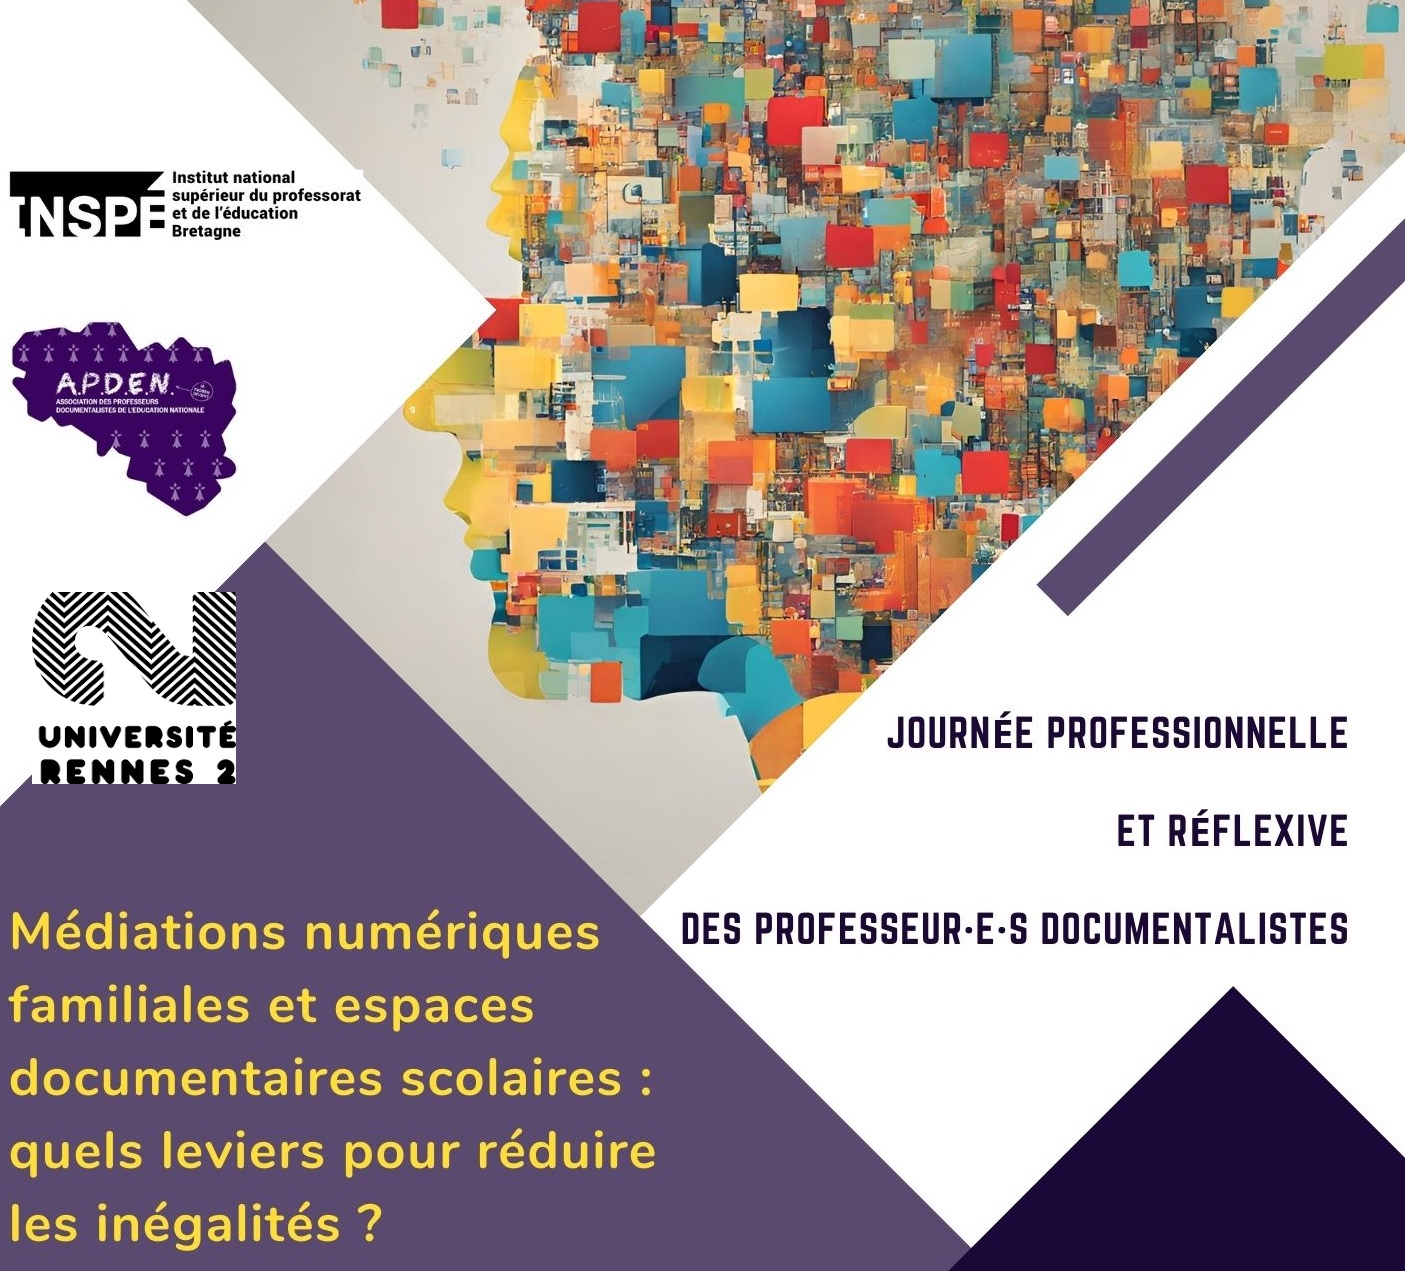 Journée professionnelle et réflexive de l’APDEN Bretagne : médiations numériques familiales et espaces documentaires scolaires, quels leviers pour réduire les inégalités ?